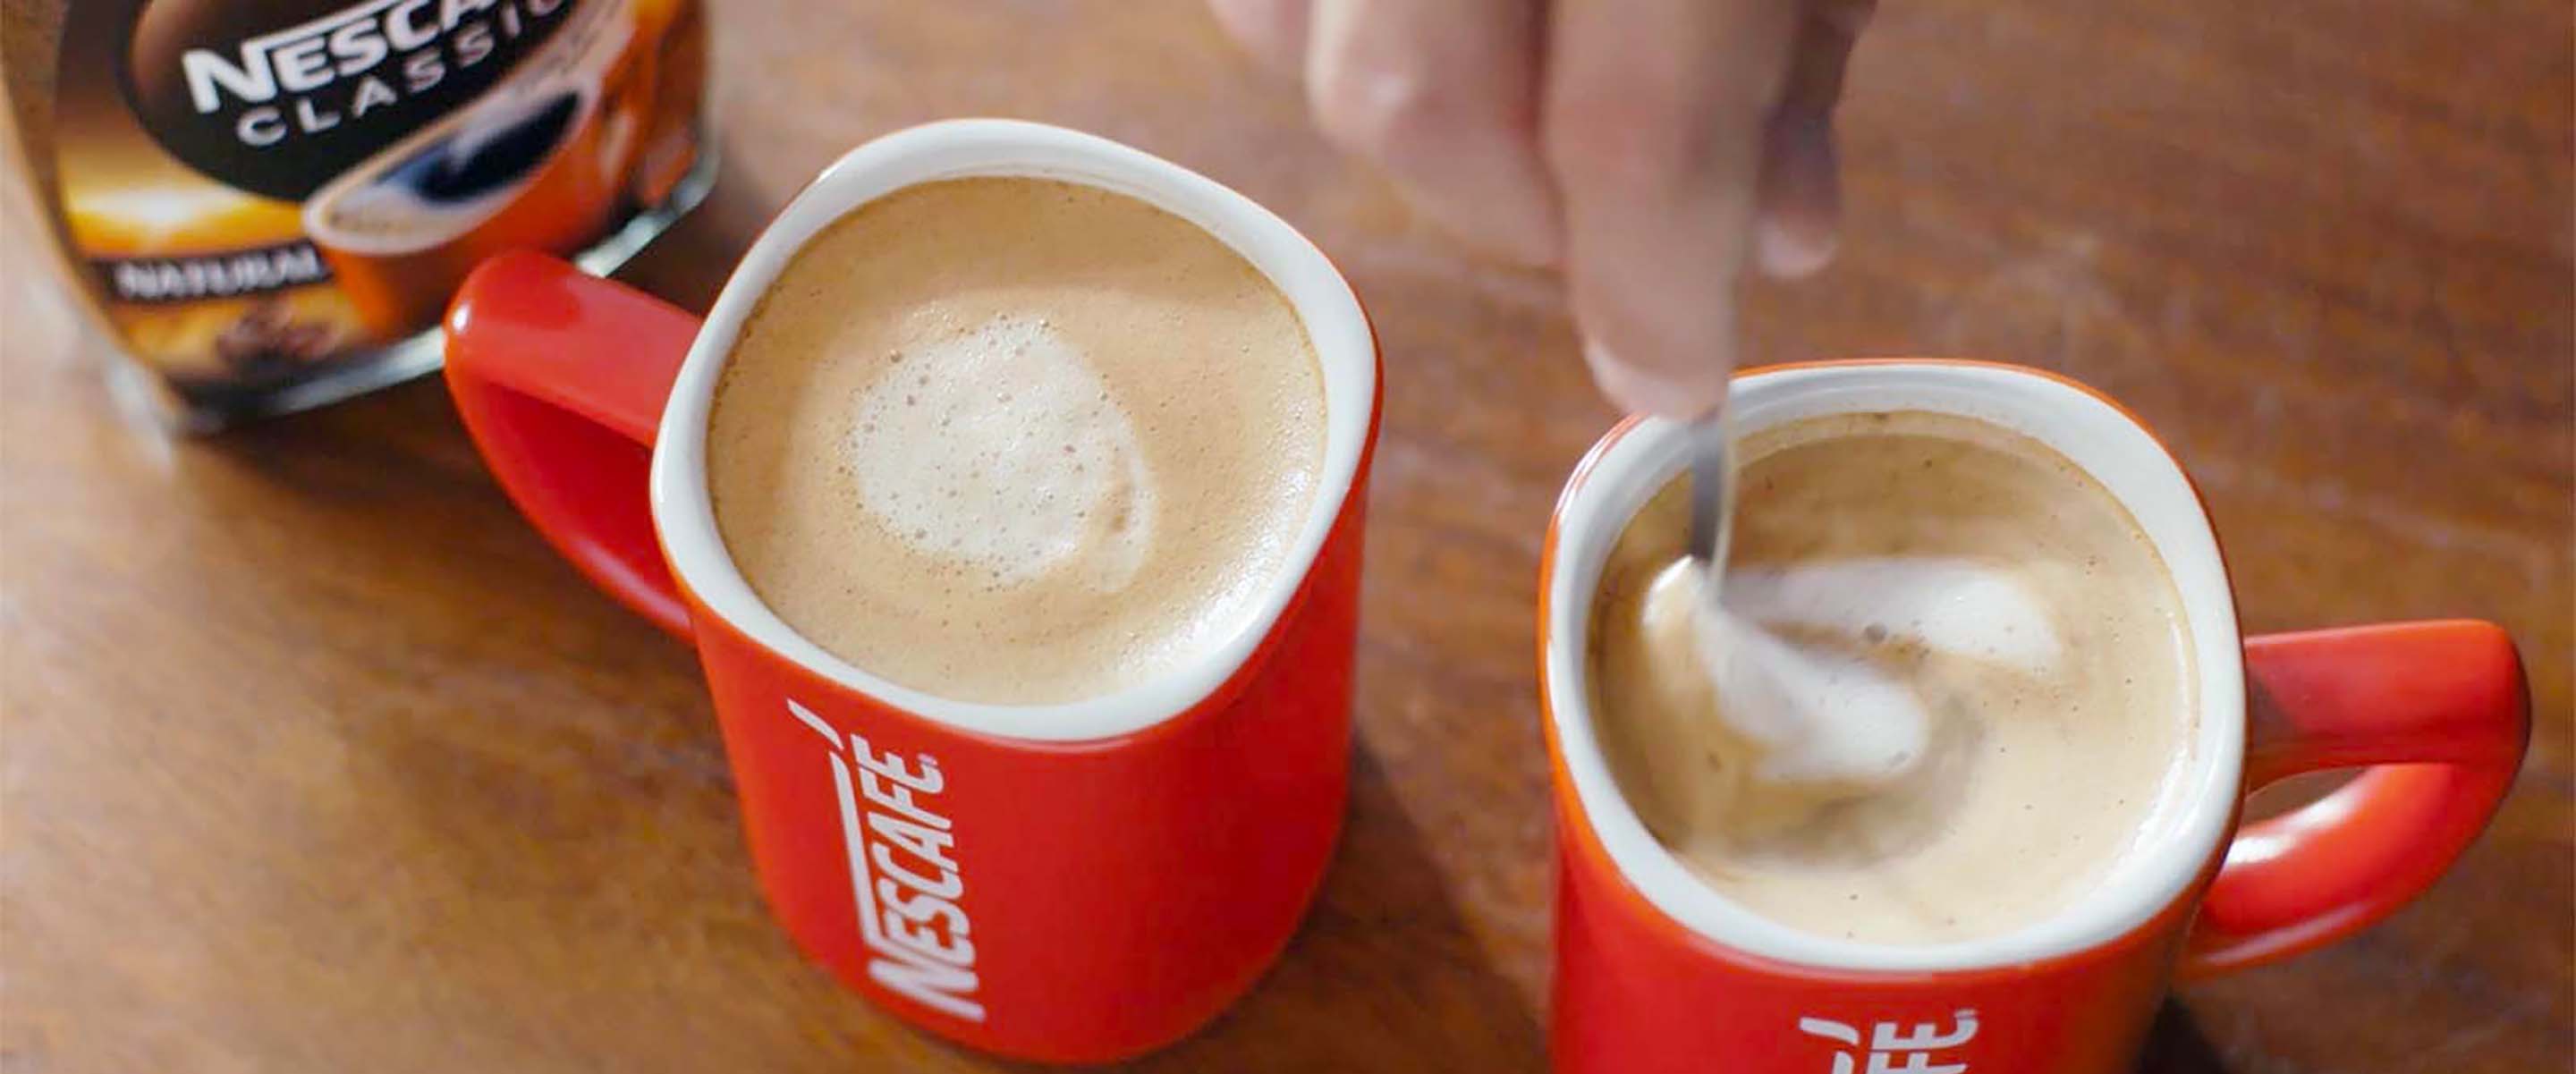 Dvije šalice ukusne i kremaste NESCAFÉ Classic kave su na stolu, spremne za posluživanje.